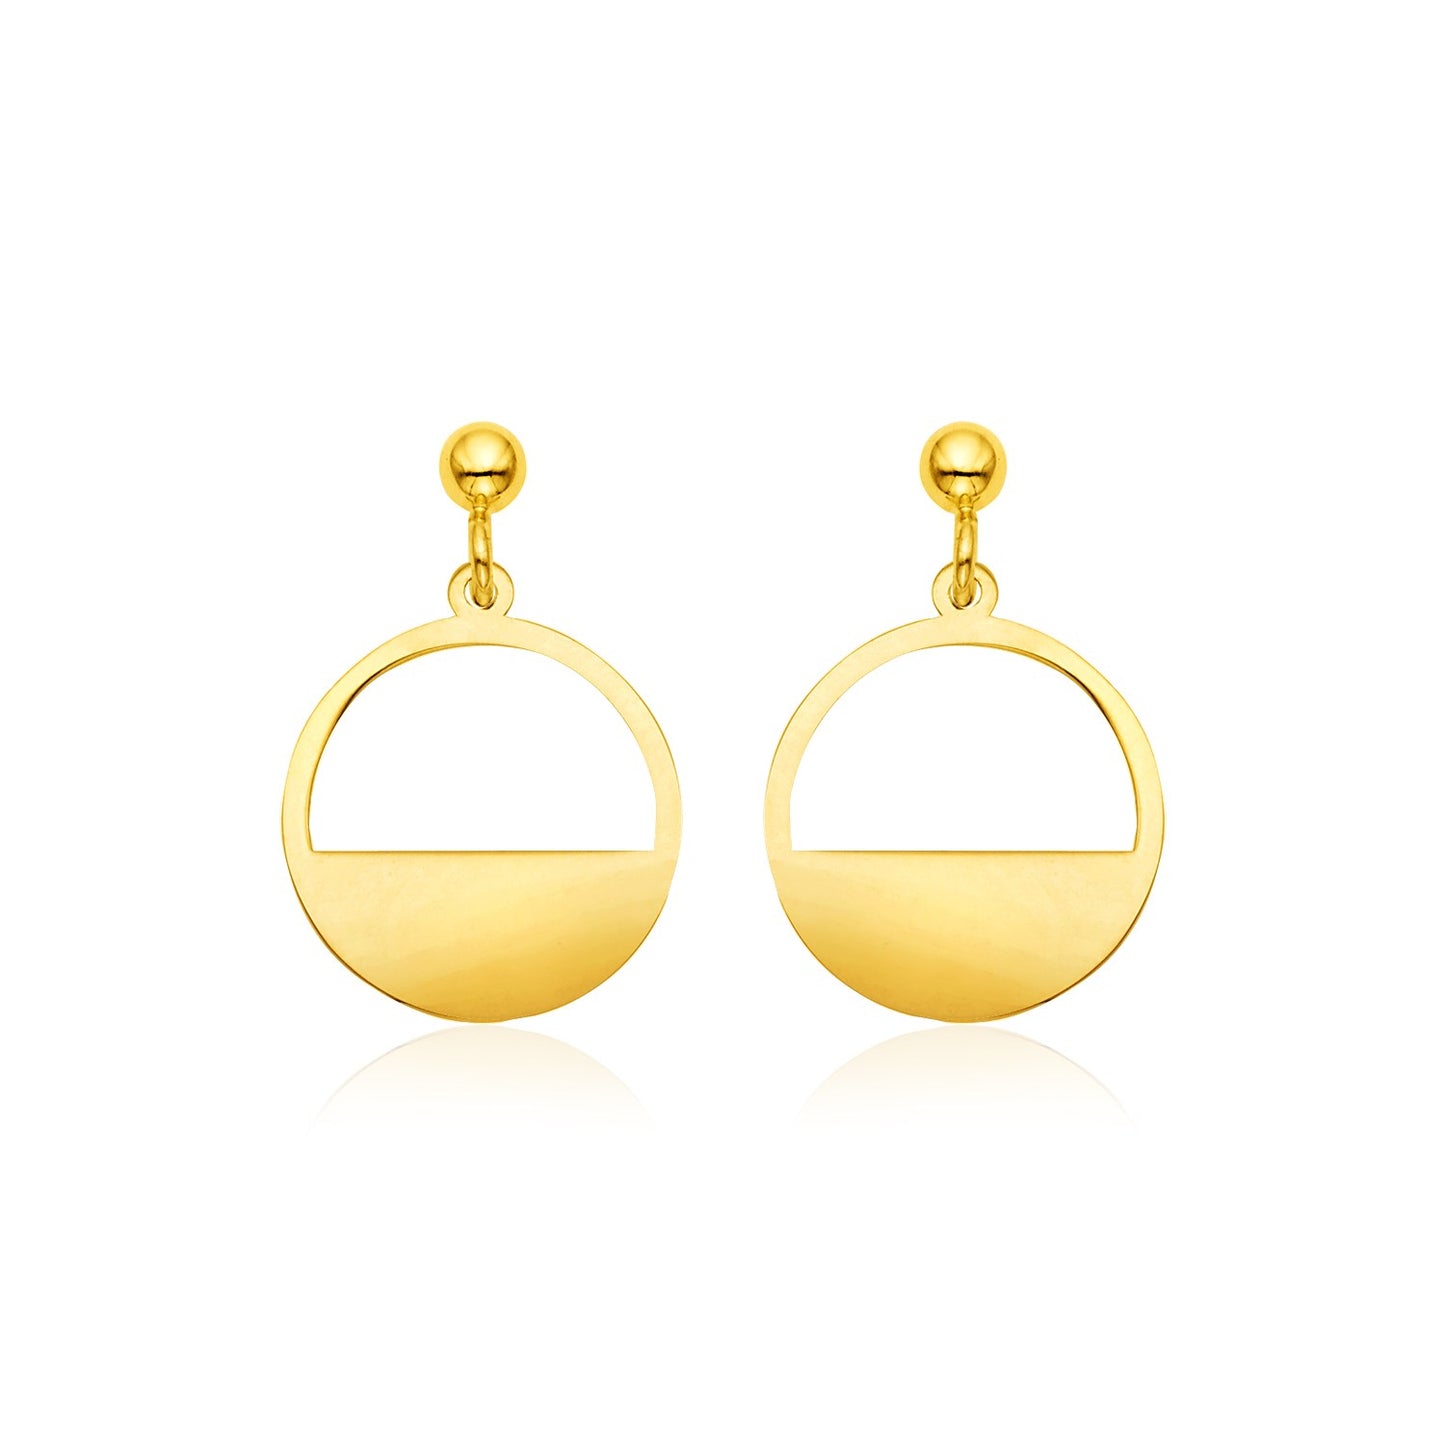 Half Circle Earrings in 14k Yellow Gold